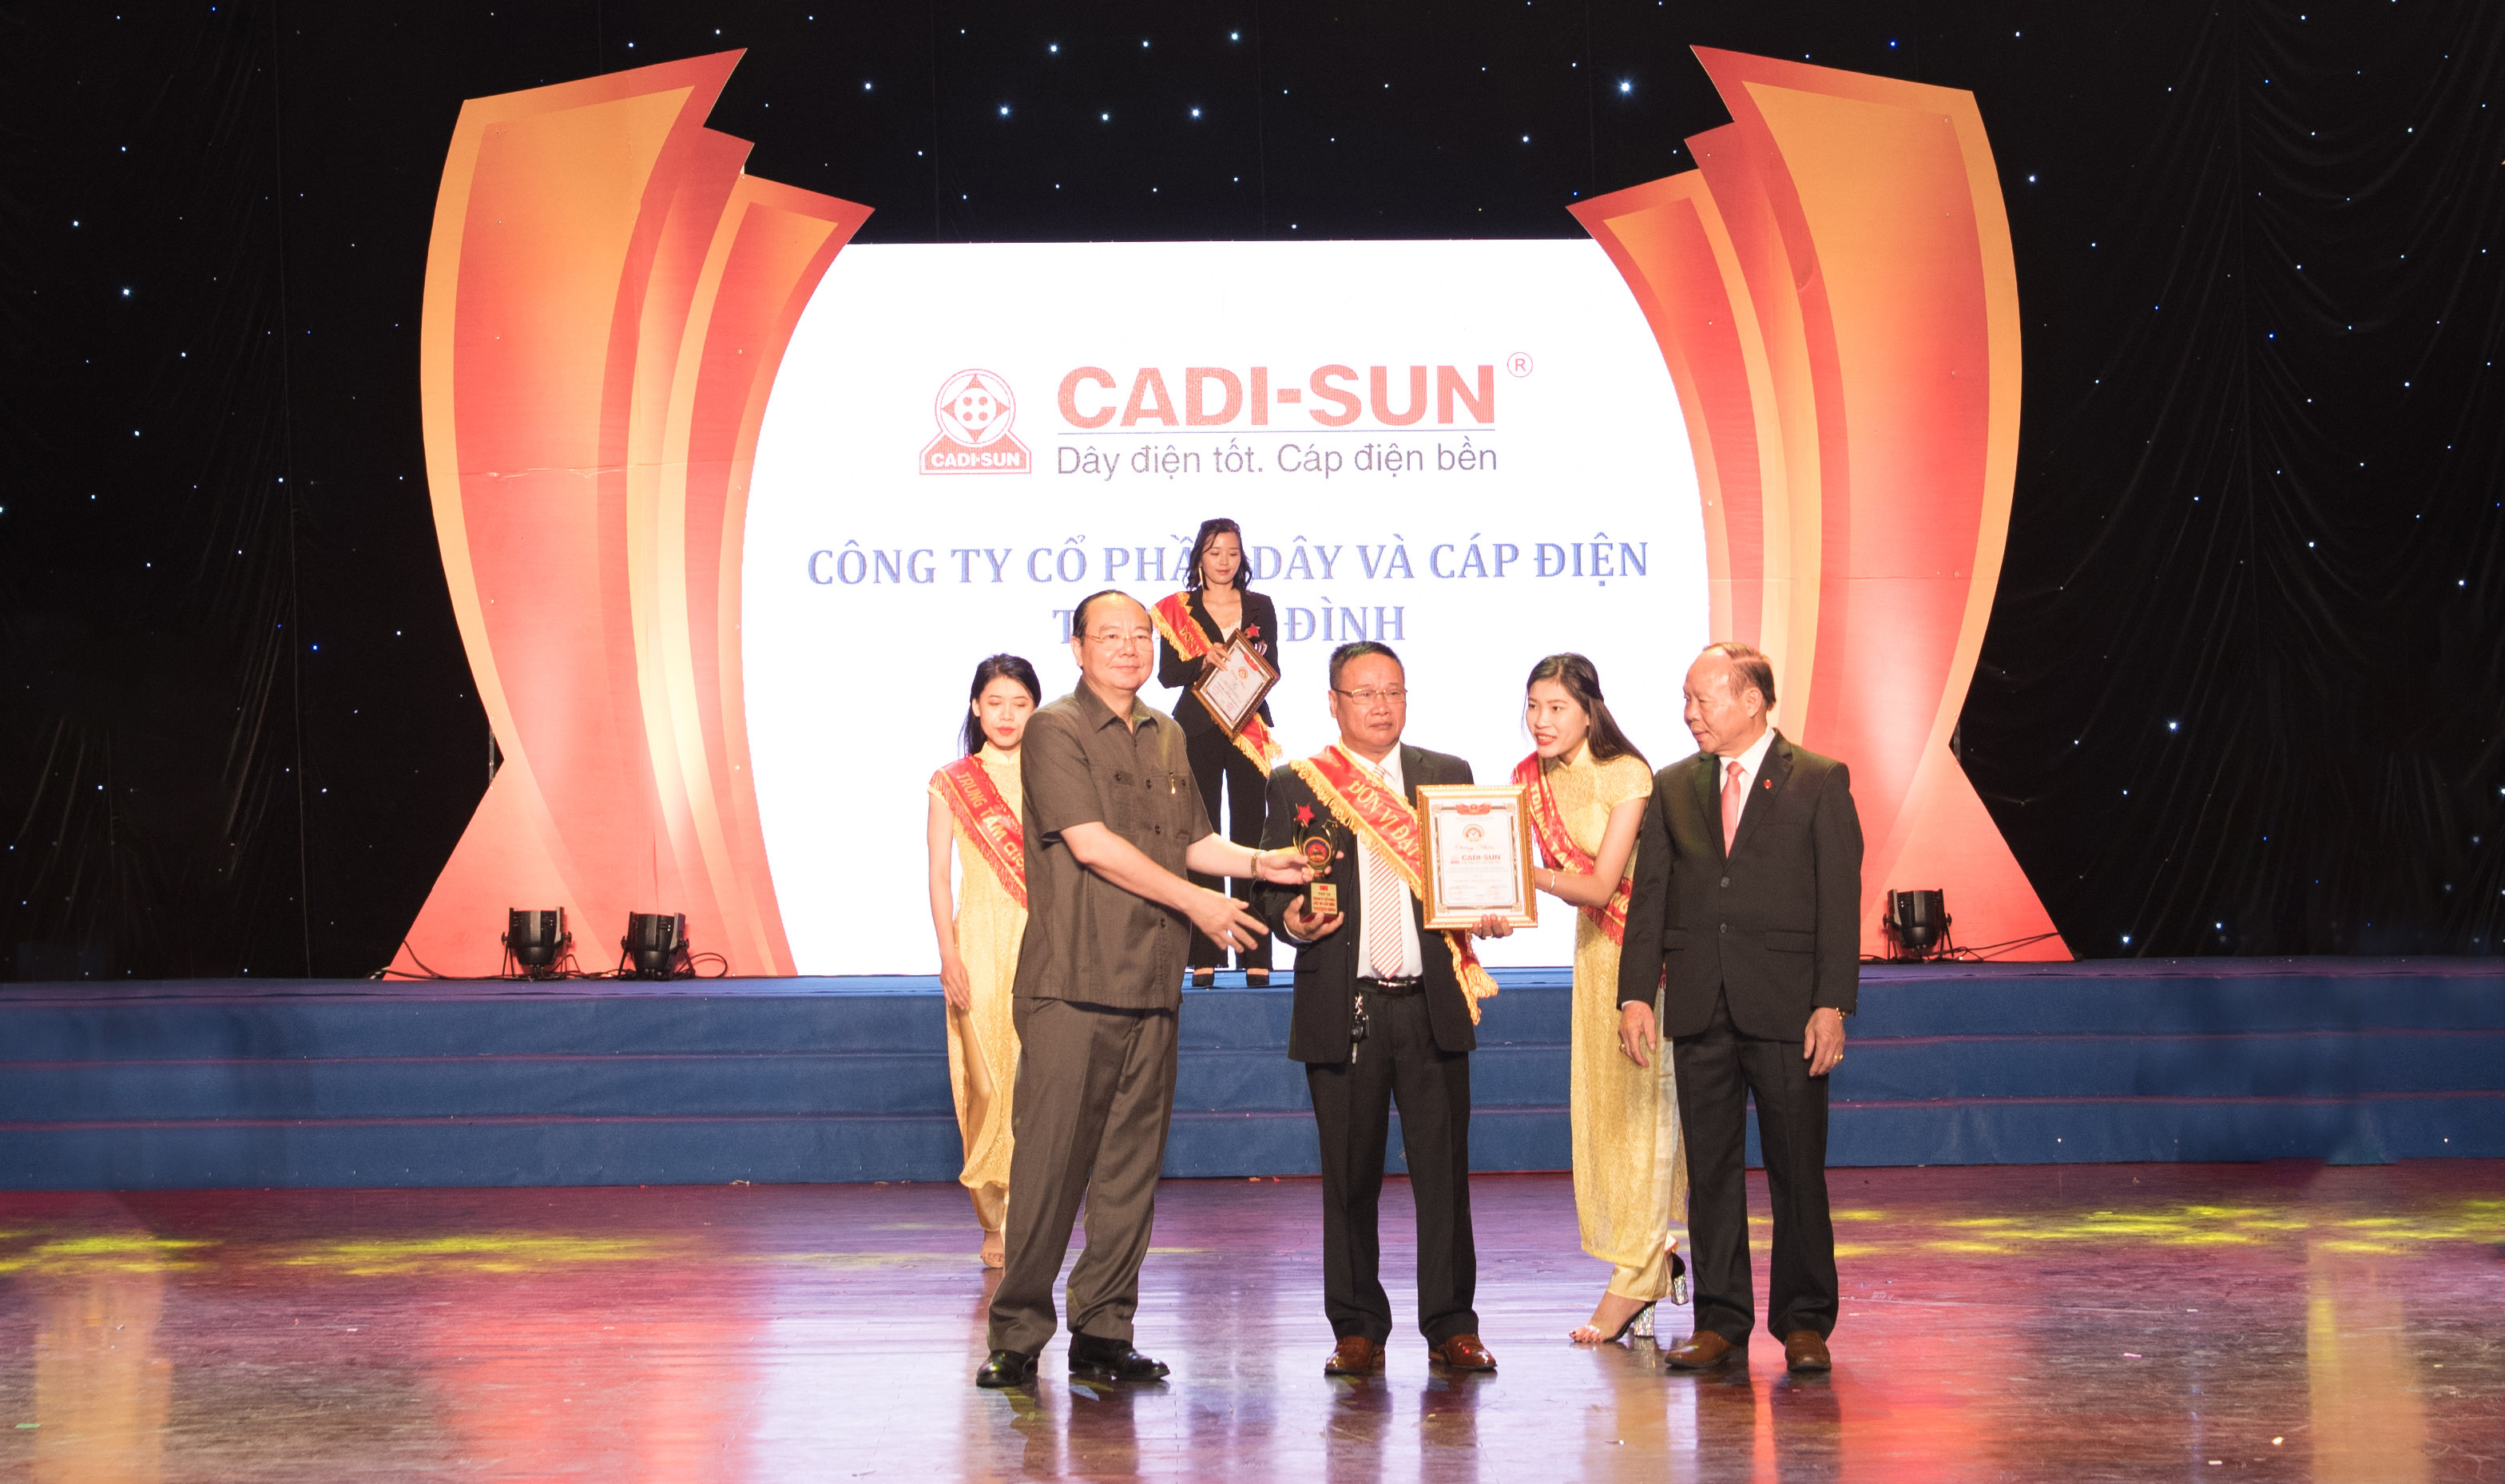 CADI-SUN - Gương mặt Top 10 Thương hiệu tín nhiệm – Sản phẩm, dịch vụ chất lượng cao 2018 và Sao Vàng Doanh nhân Đất Việt 2018